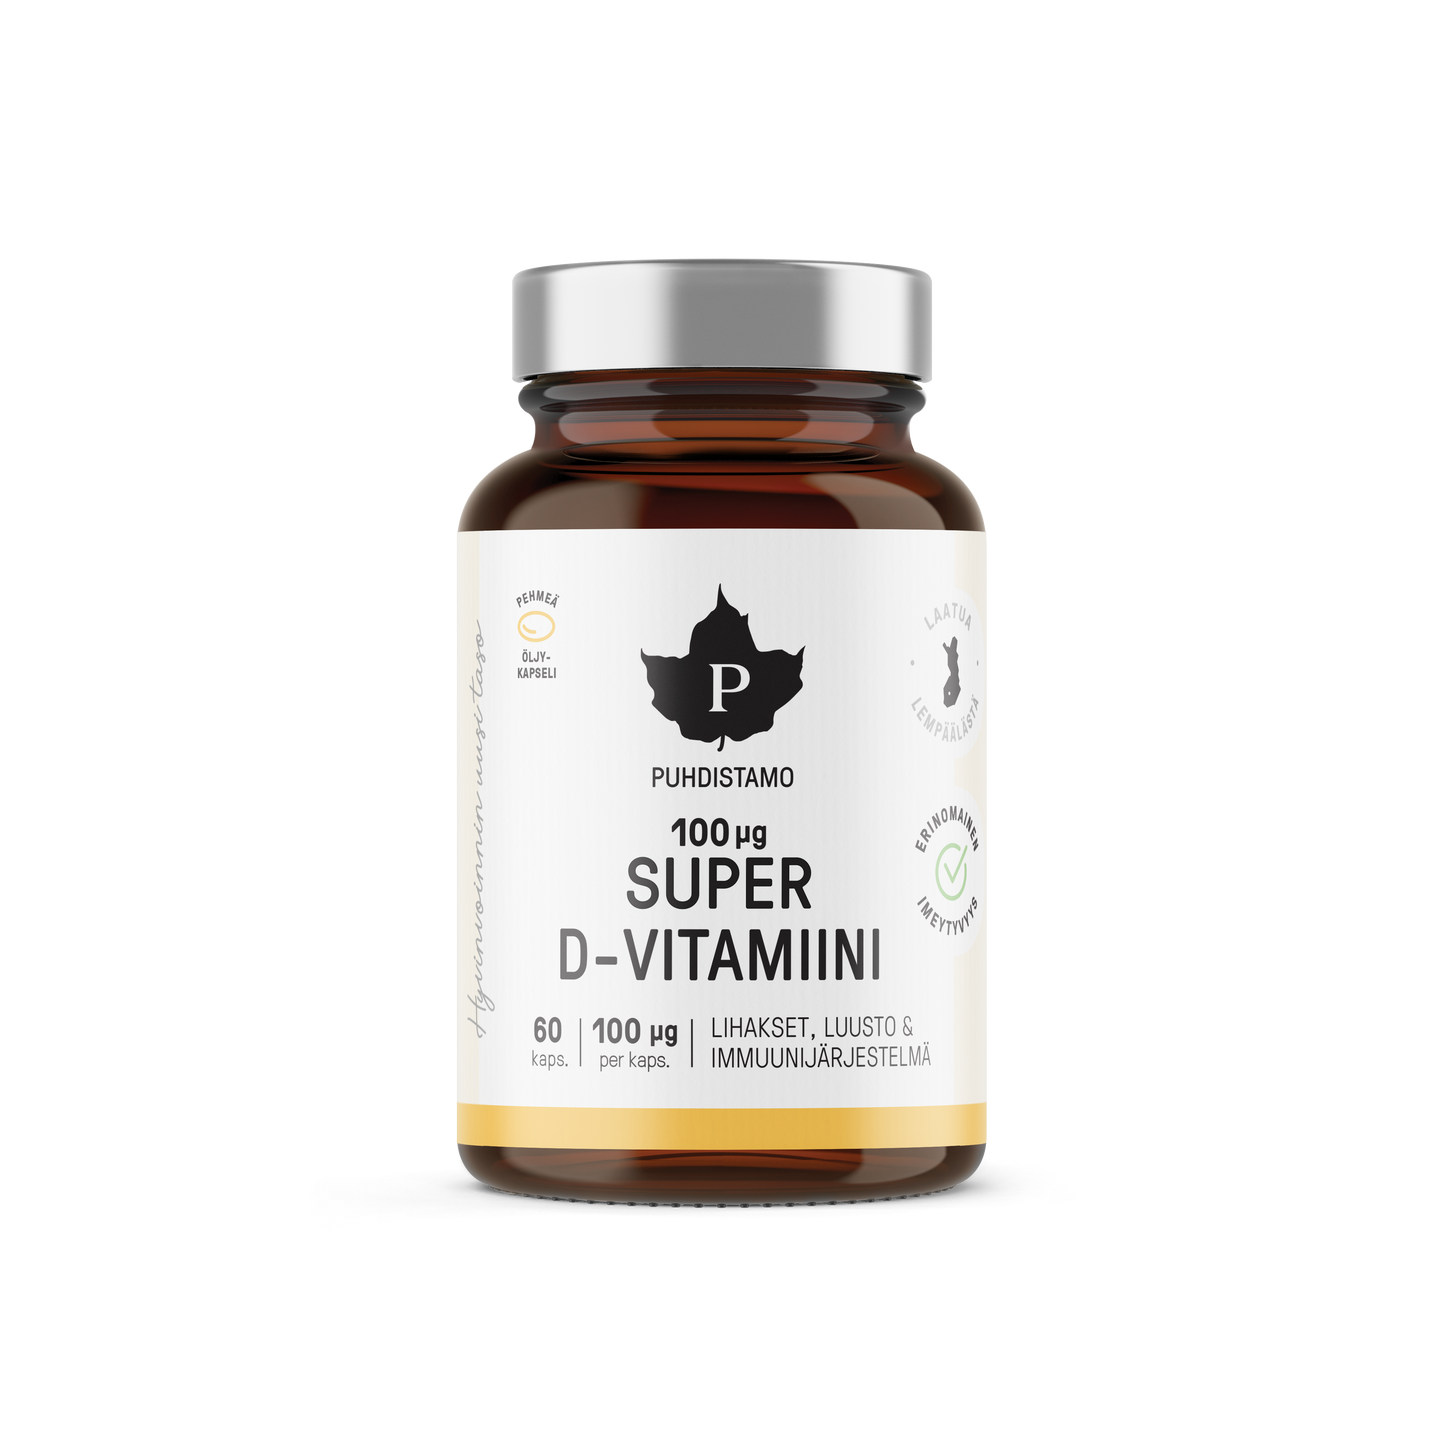 w2w terveys ja hyvinvointi Puhdistamo Super D-vitamiini 100ug D3-vitamiini 60 kapselia